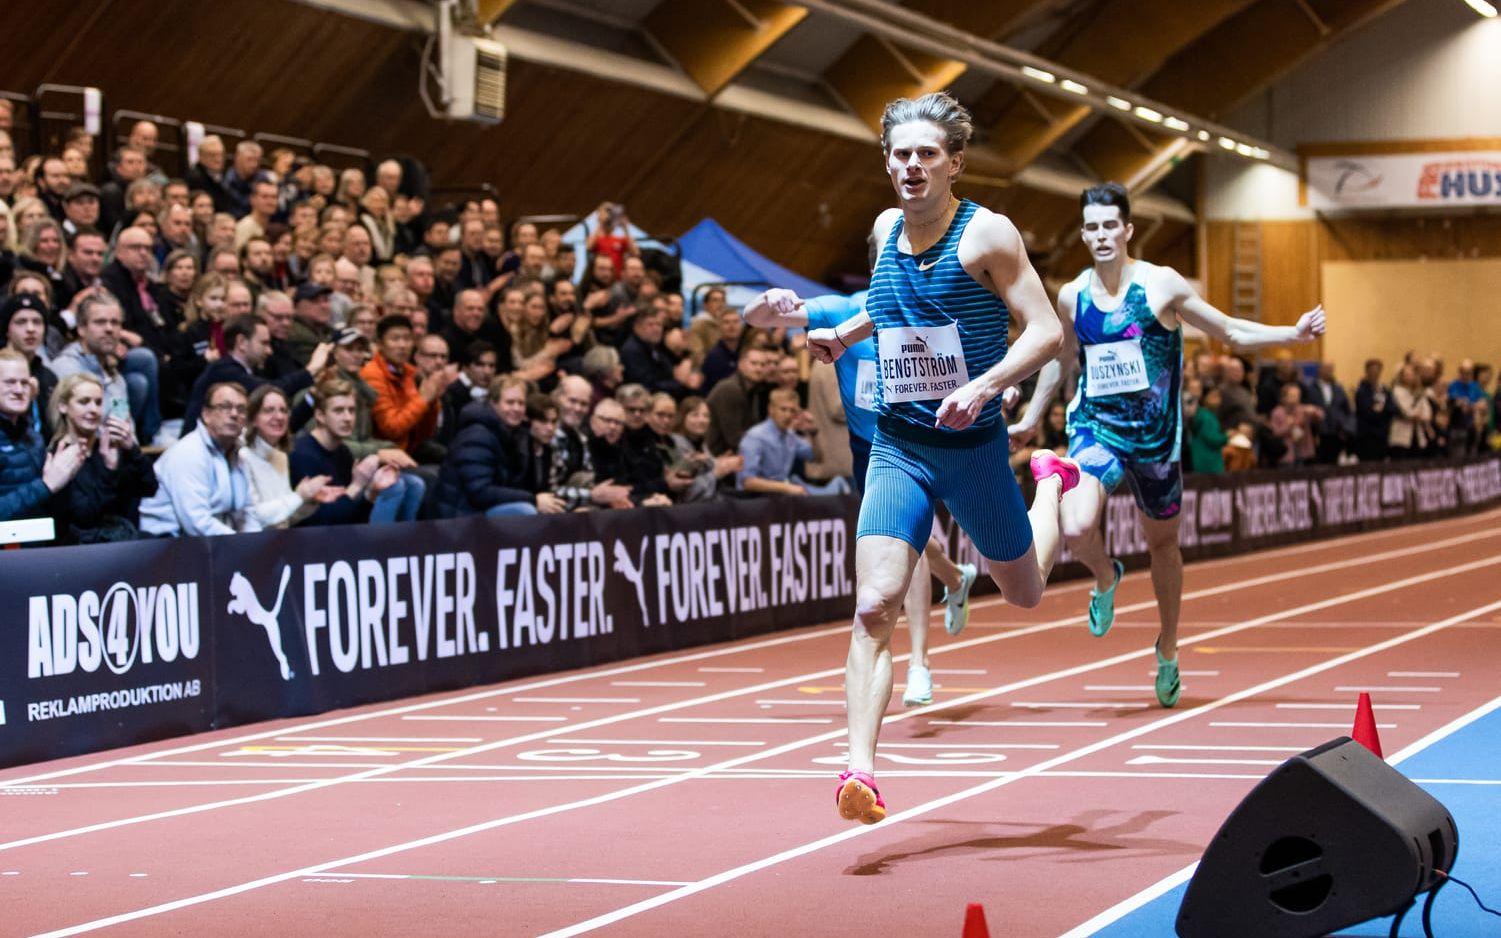 Öis-löparen Carl Bengtström sprang snabbast när det var dags för 400 meter.